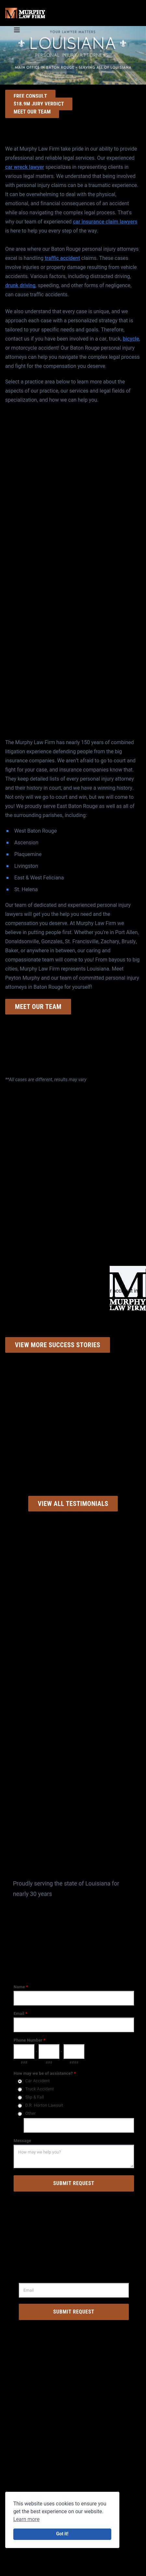 Murphy Law Firm LLC - Lafayette LA Lawyers